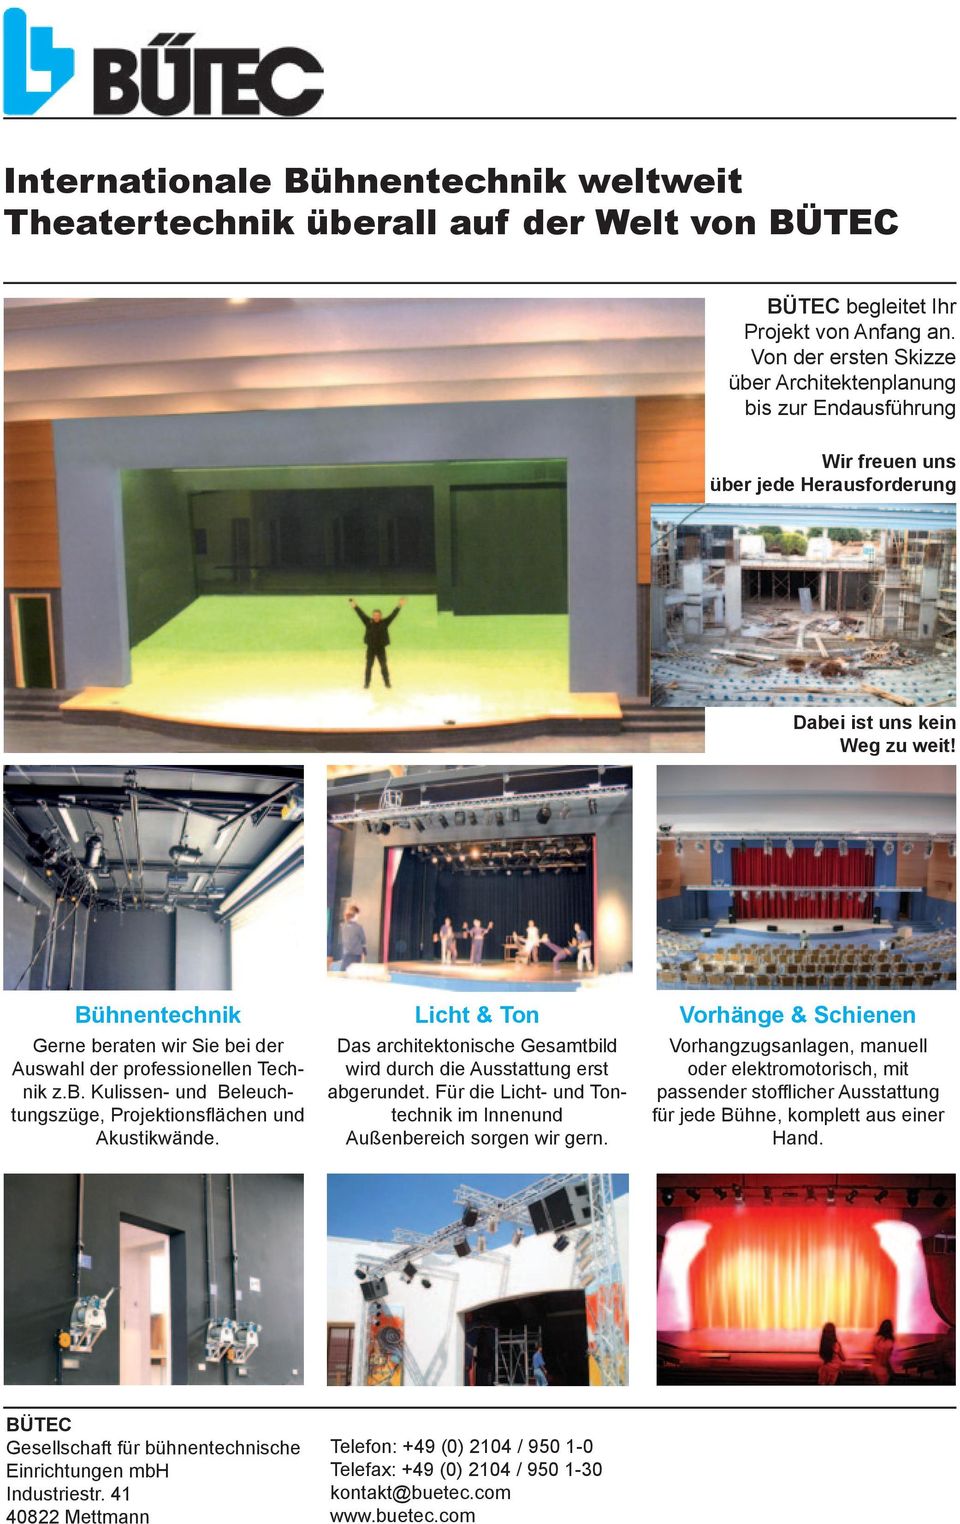 Bühnentechnik Licht & Ton Vorhänge & Schienen Gerne beraten wir Sie bei der Auswahl der professionellen Technik z.b. Kulissen- und Beleuchtungszüge, Projektionsflächen und Akustikwände.